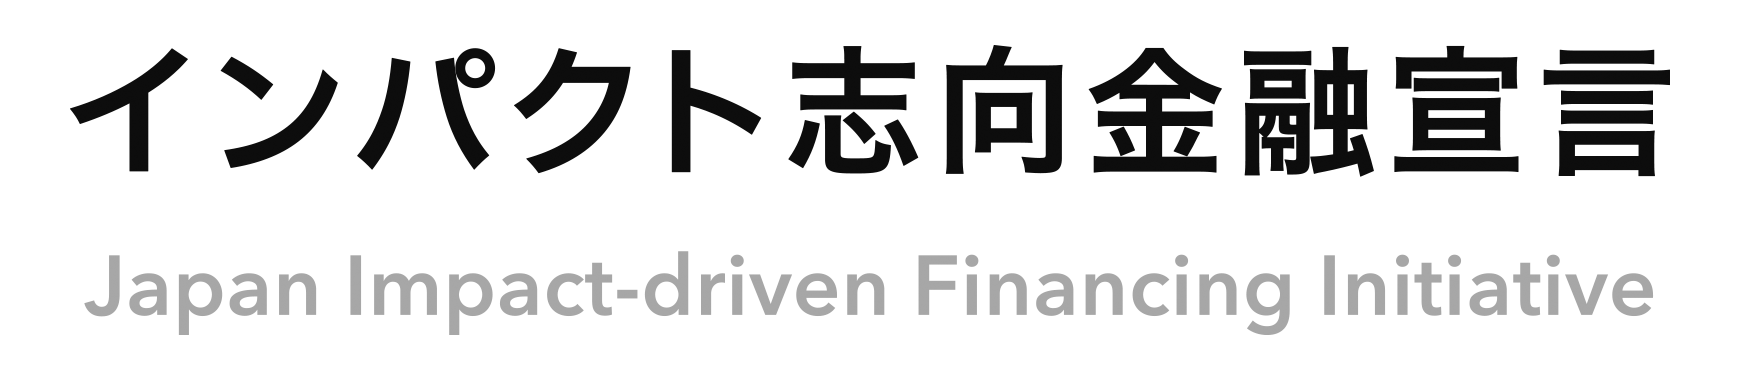 Japan_Impact-driven_Financing_Initiative_LOGO